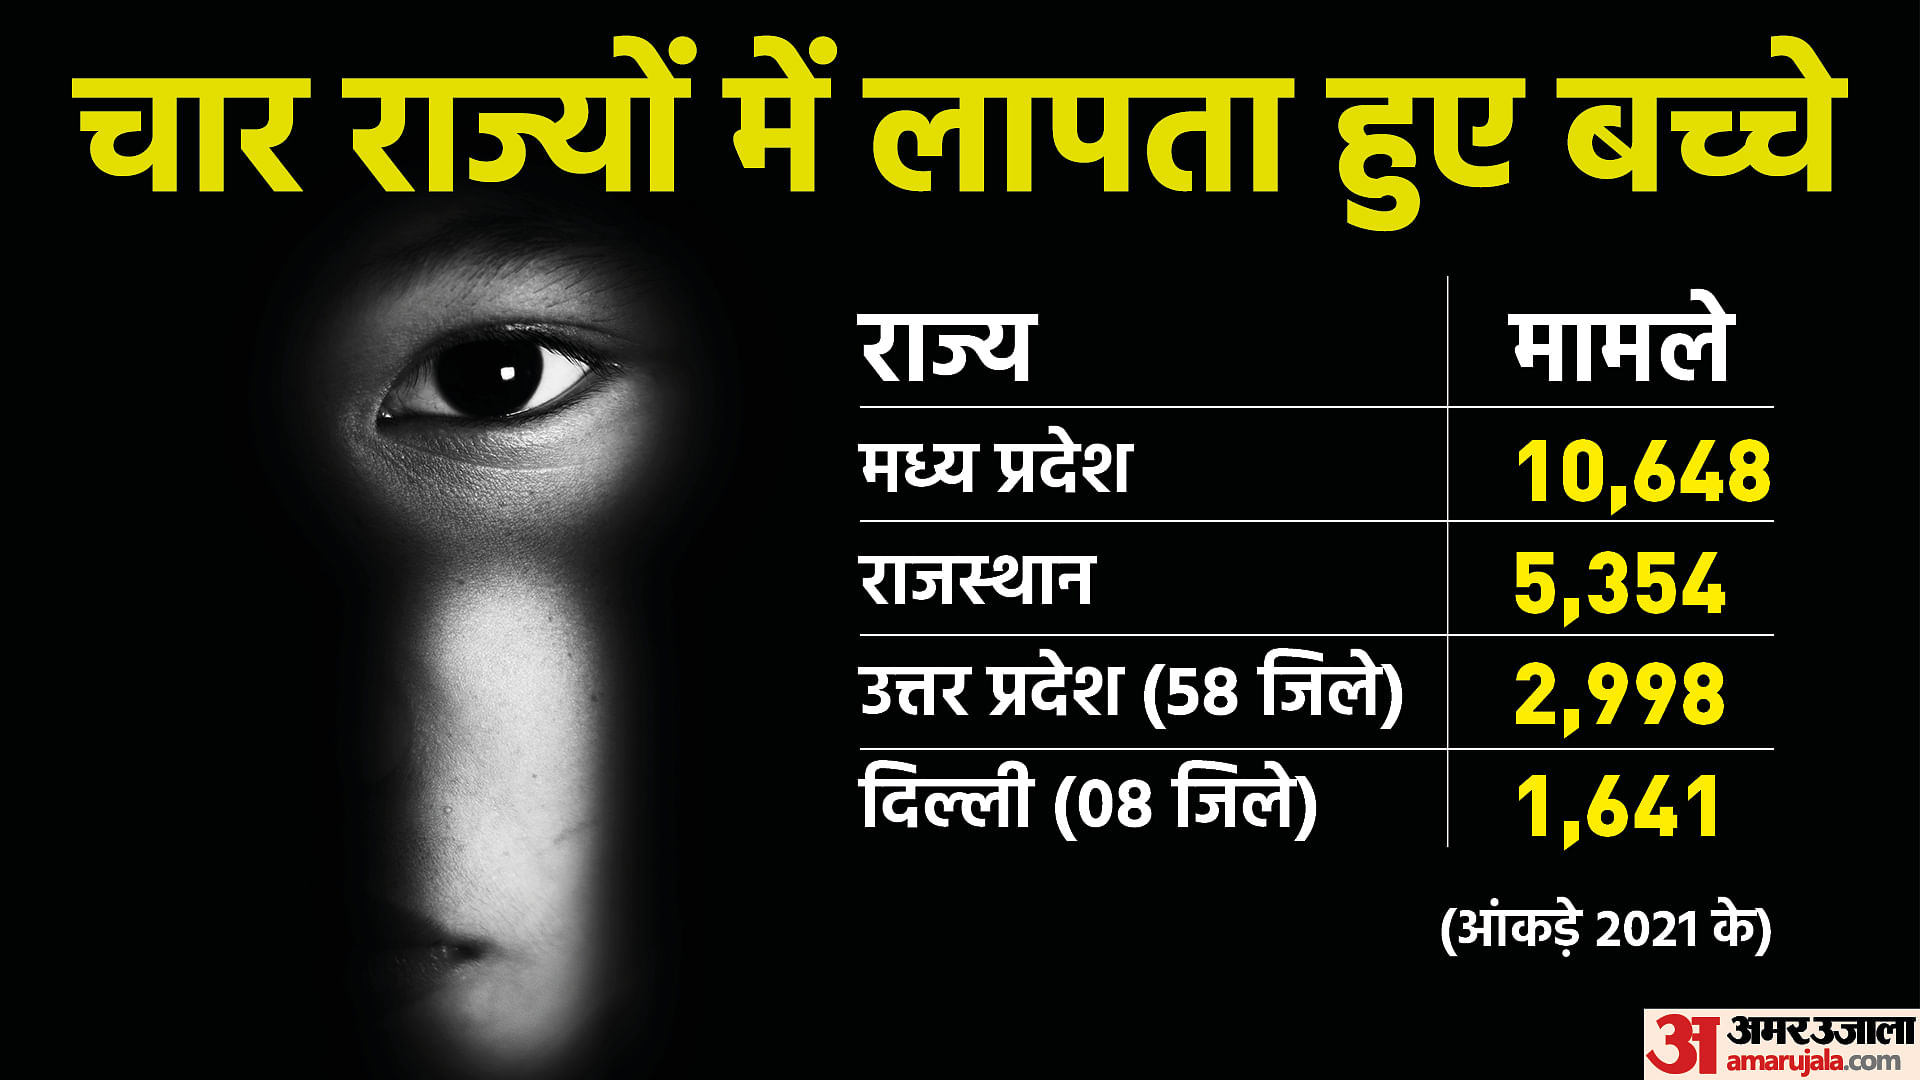 लापता बच्चों के मामले में मप्र और राजस्थान टॉप पर हैं।